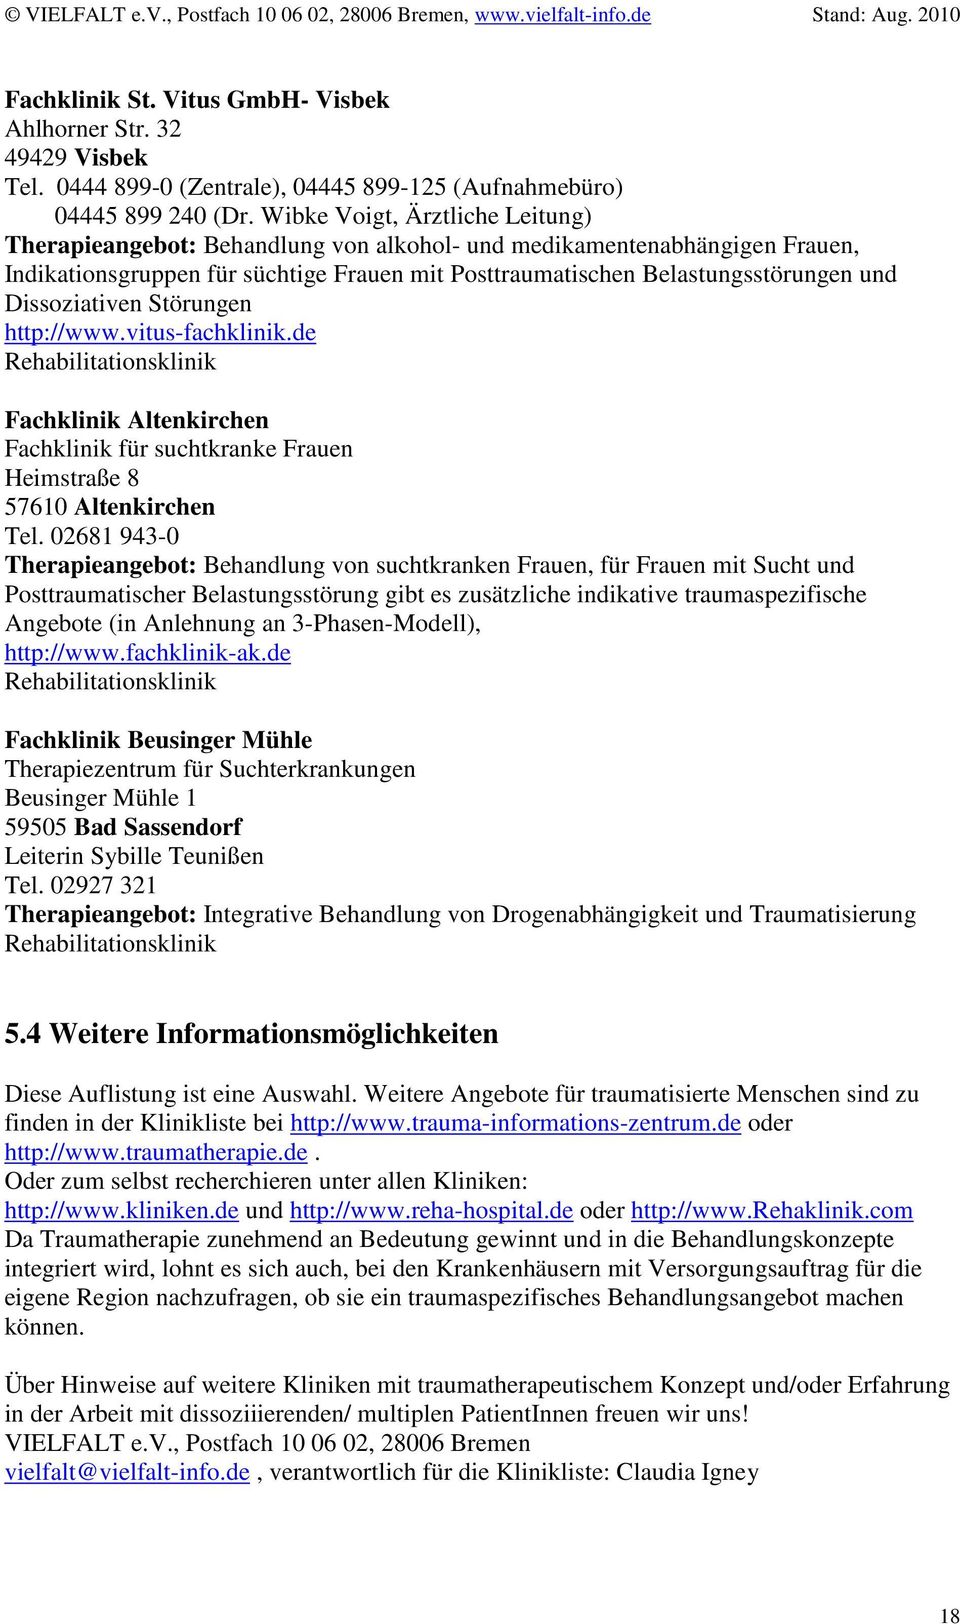 Dissoziativen Störungen http://www.vitus-fachklinik.de Fachklinik Altenkirchen Fachklinik für suchtkranke Frauen Heimstraße 8 57610 Altenkirchen Tel.